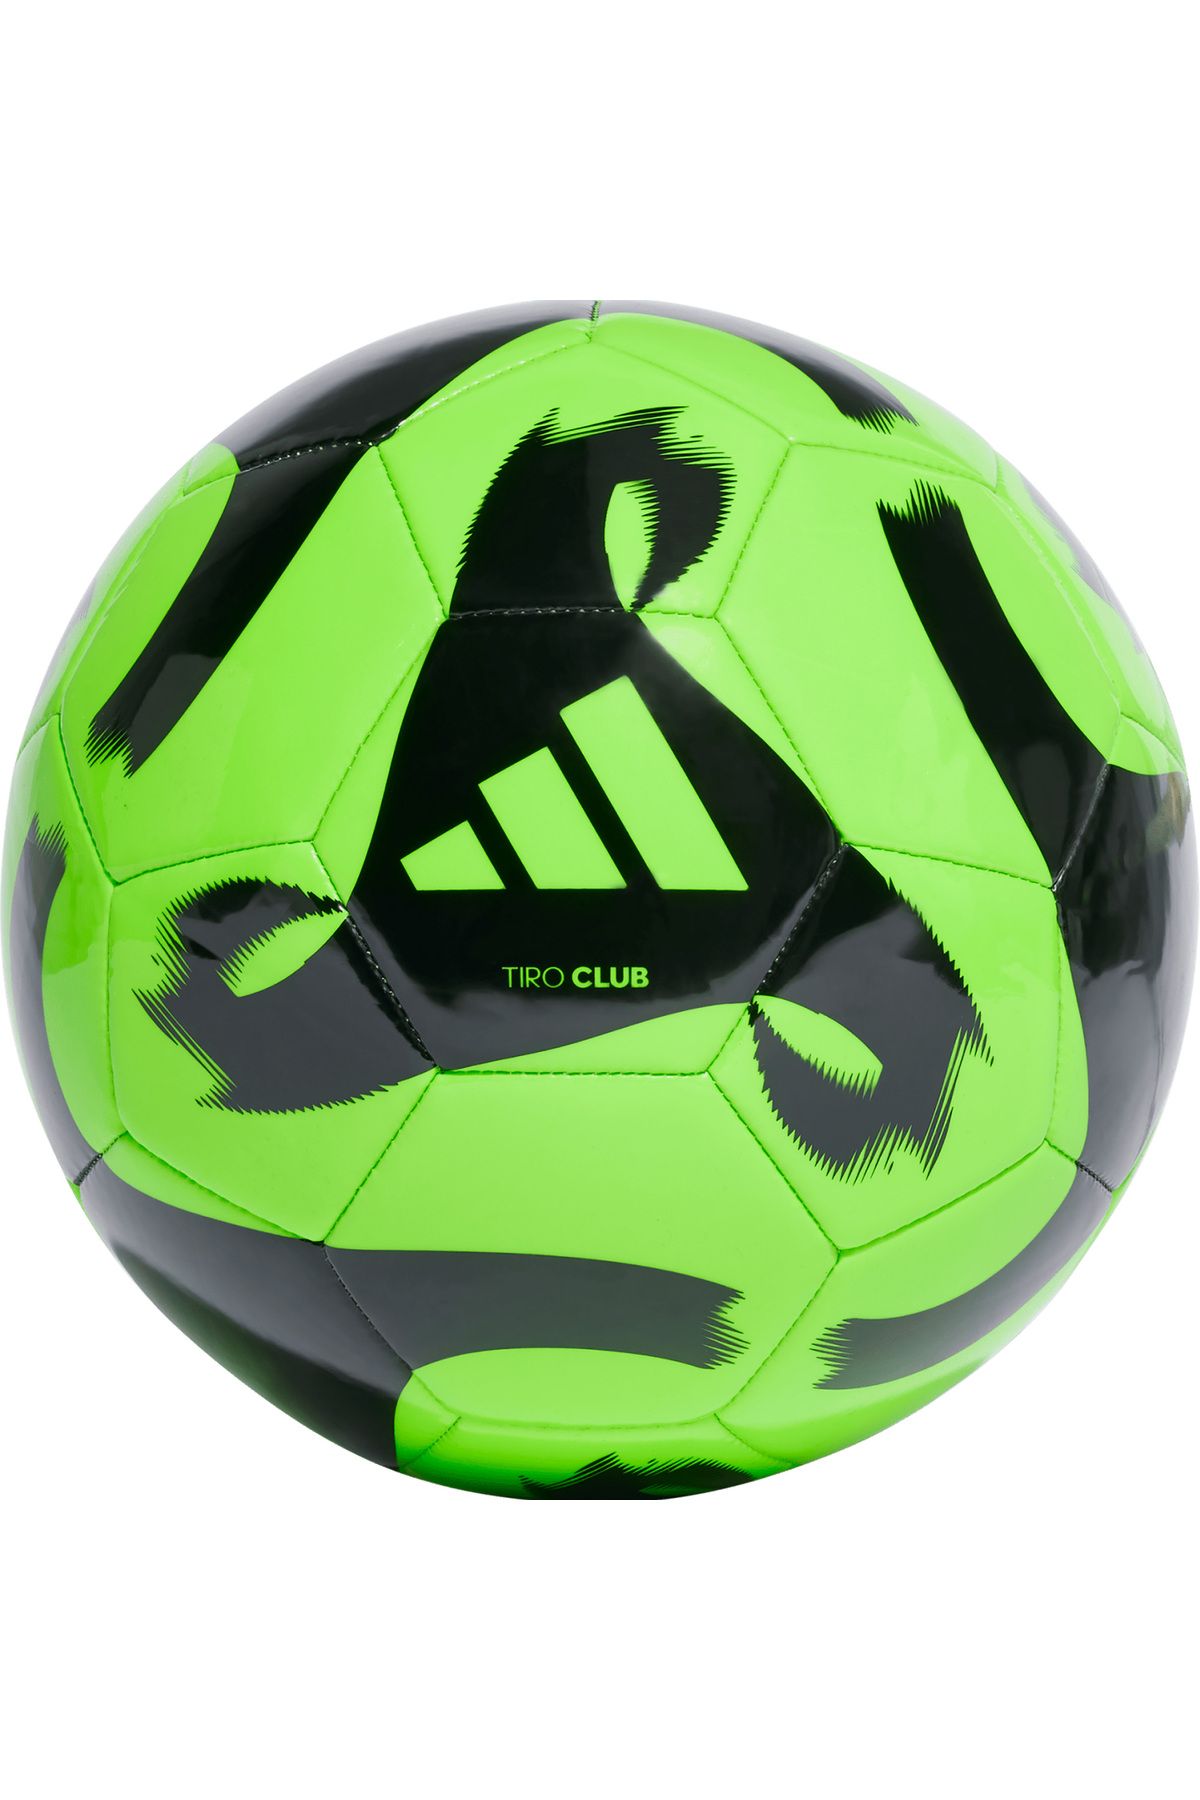 adidas Hz4167 Tıro Clb Futbol Topu Yeşil